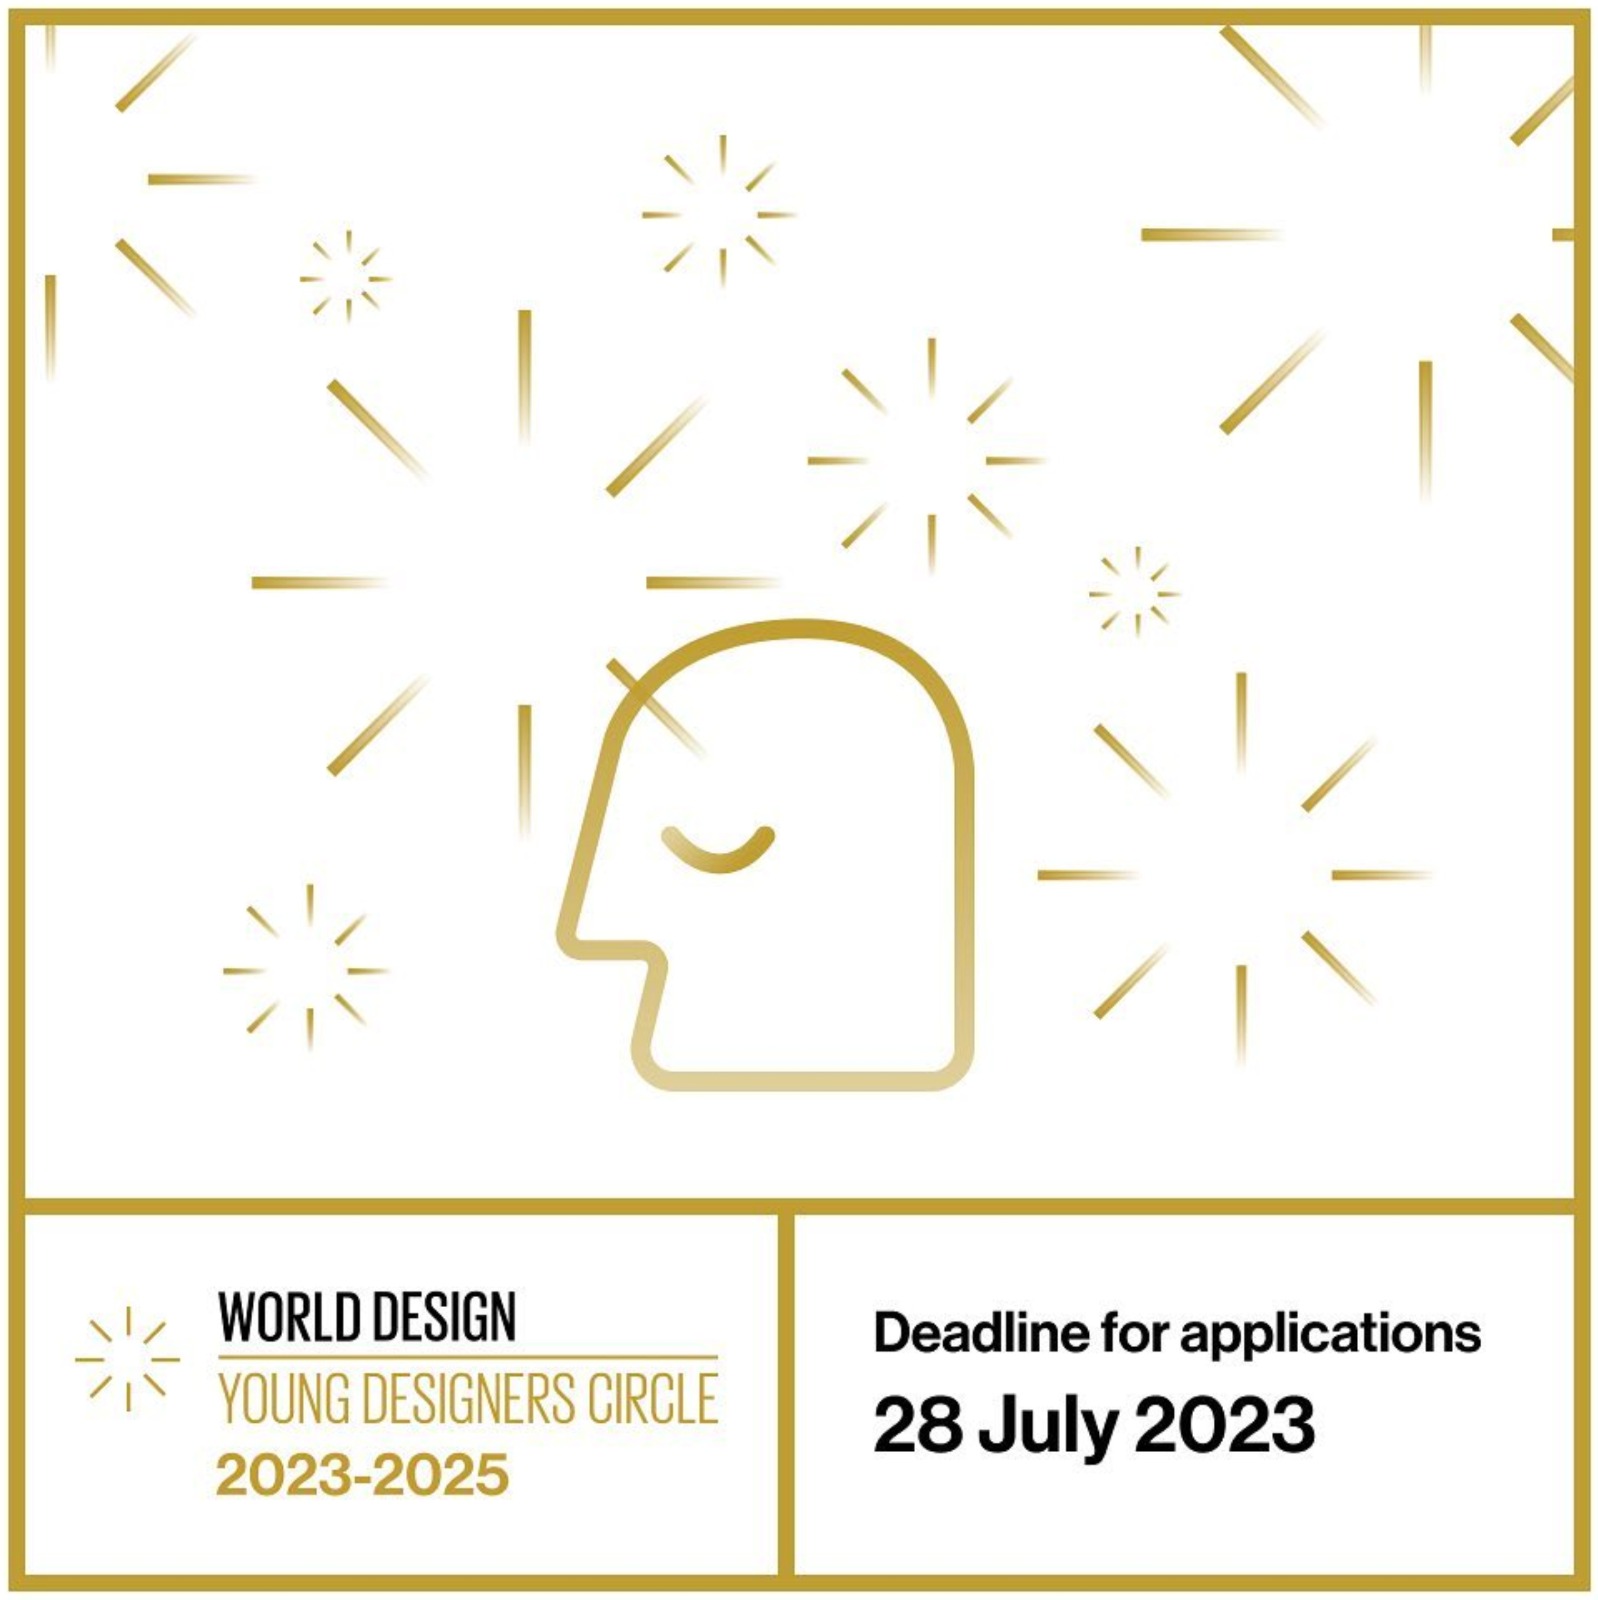 Tüm genç tasarımcılara sesleniyoruz! WDO, 28 Temmuz'a kadar  #YoungDesignersCircle 2023-2025 başvurularını kabul ediyor.<br>
<i>Calling all young designers! Until 28 July, WDO is accepting applications for our 2023-2025 #YoungDesignersCircle.</i>